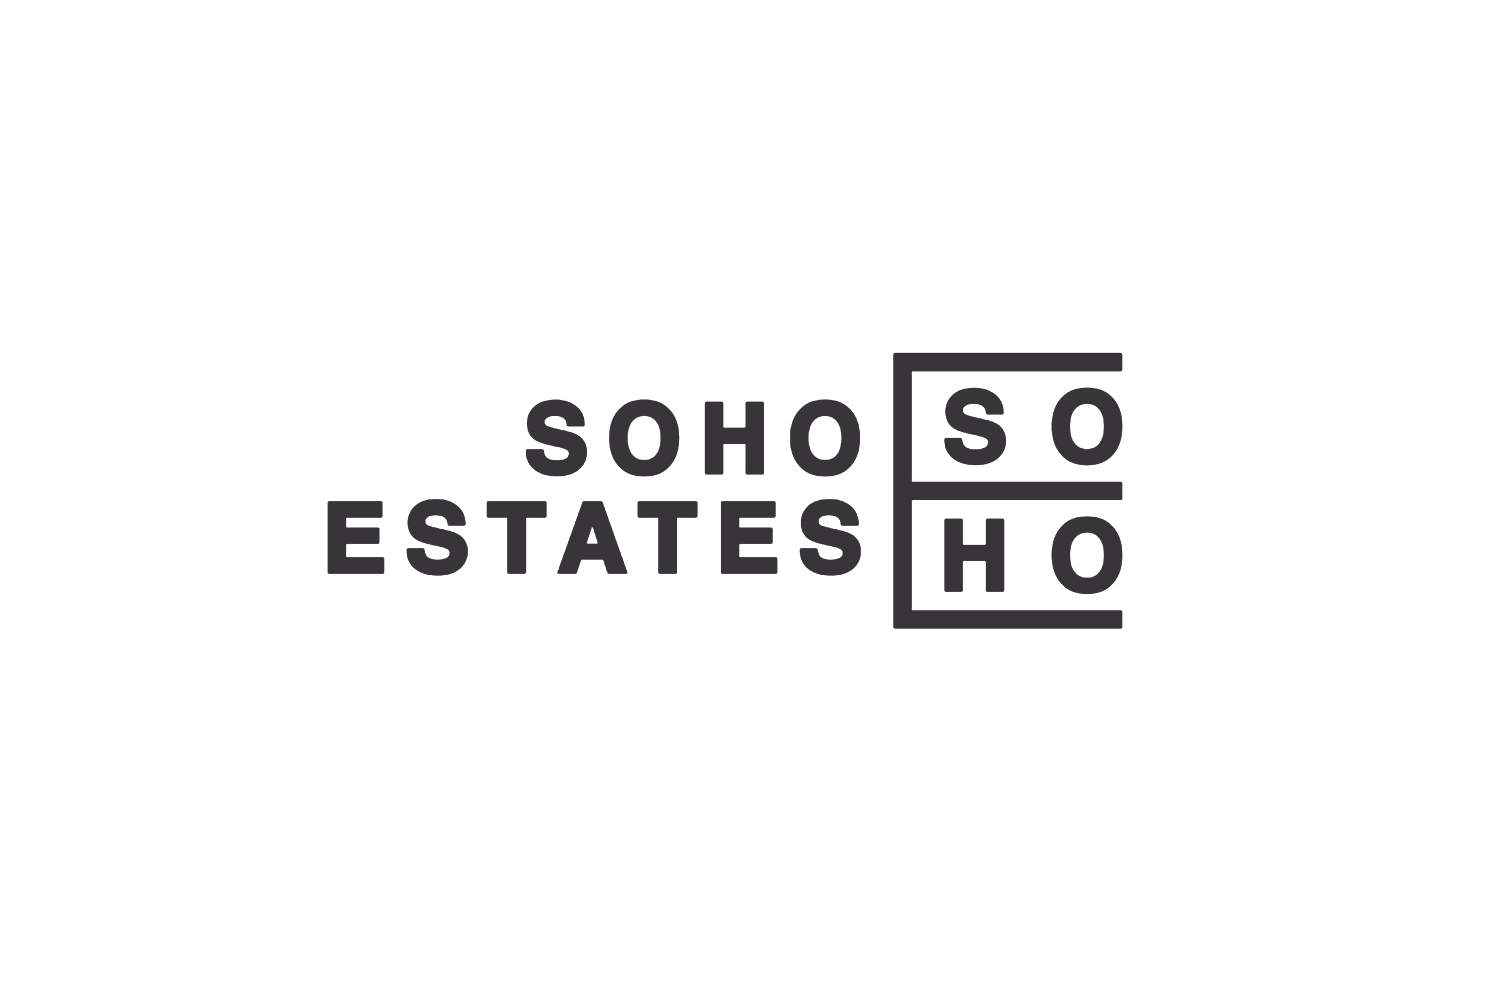 Soho Estates.jpg